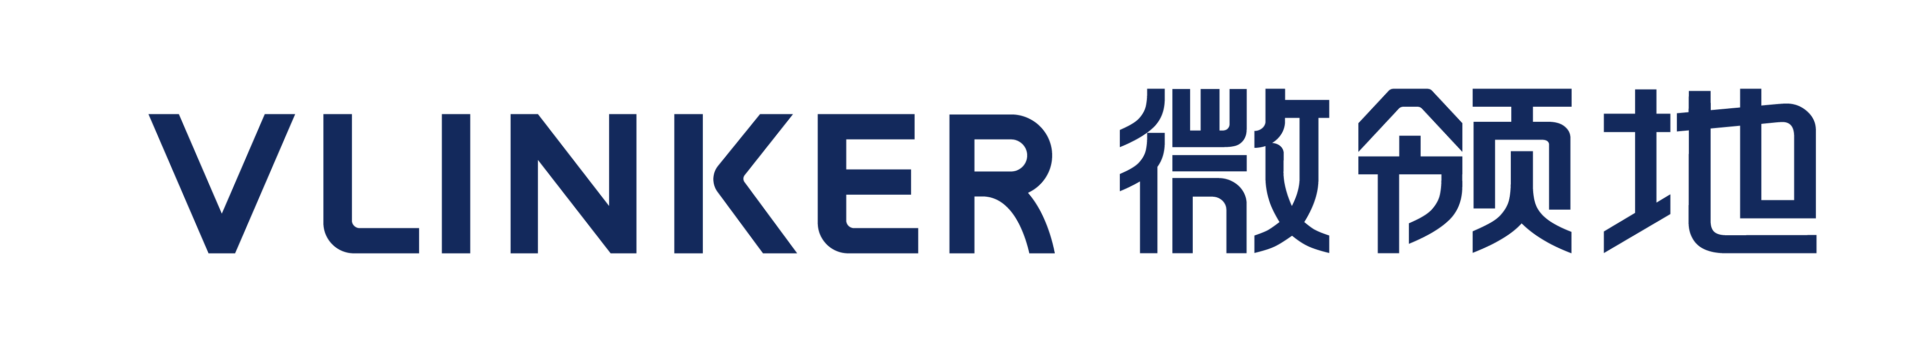 Vlinker logo